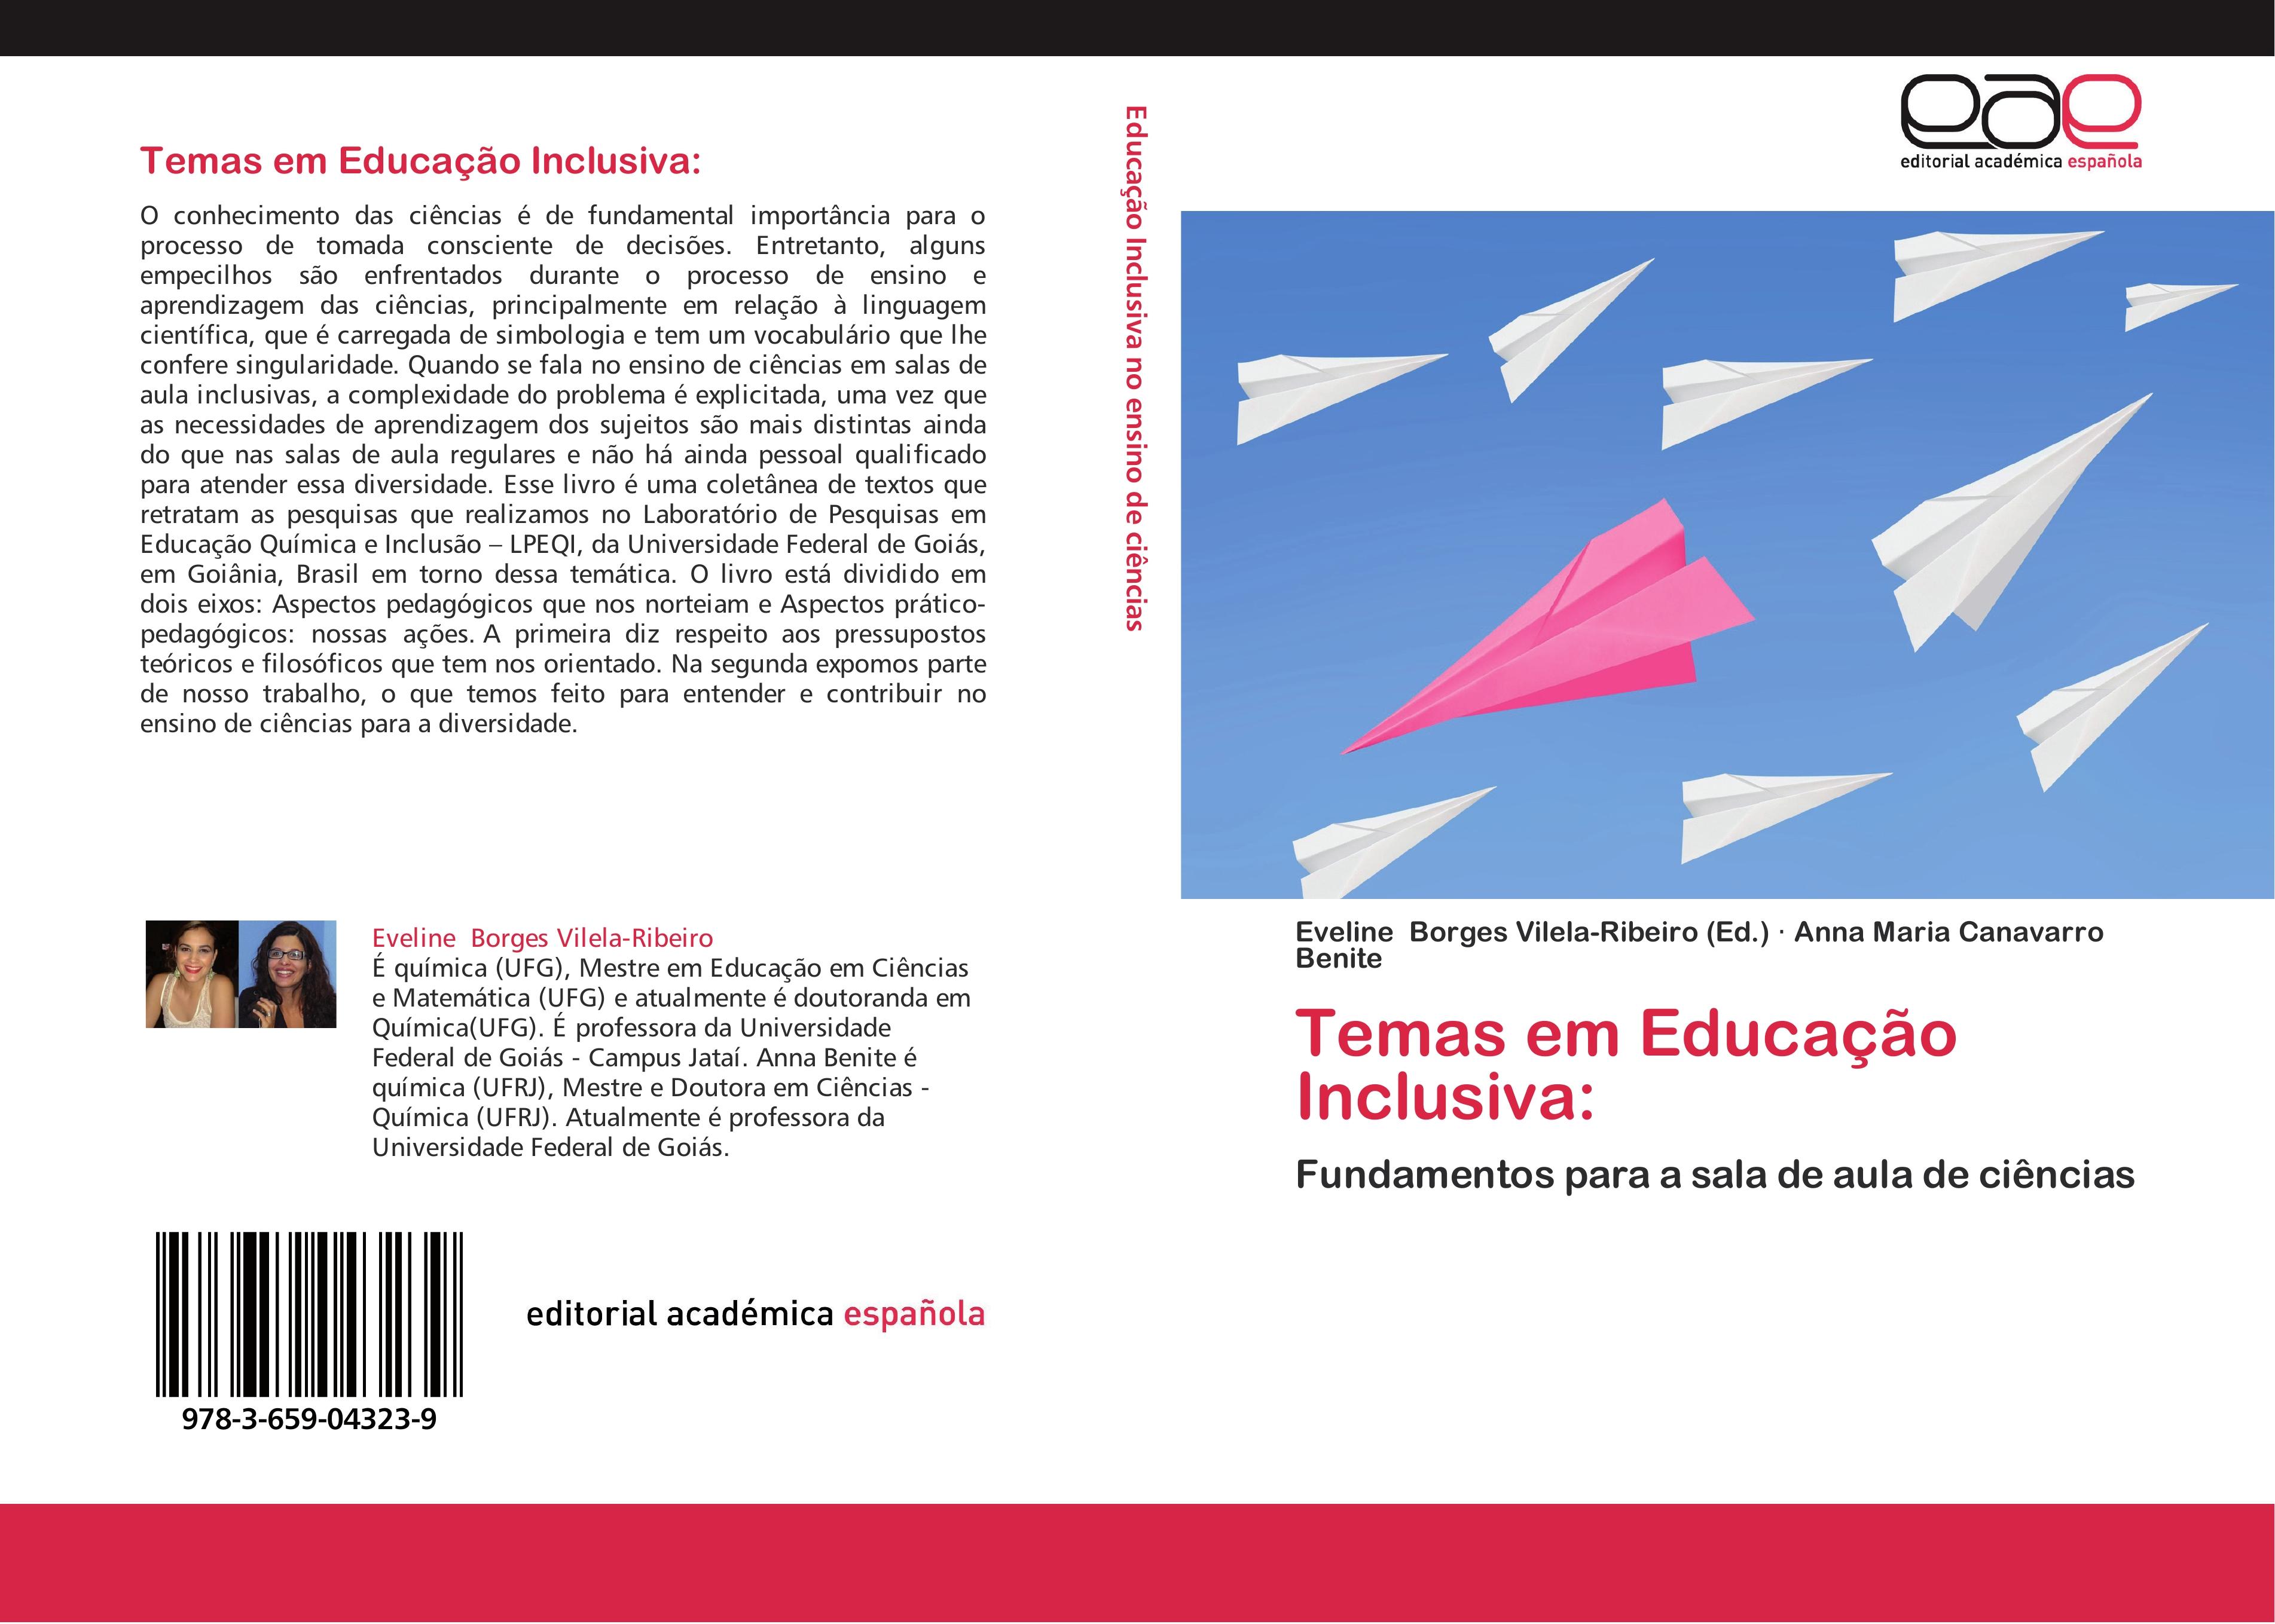 Temas em Educação Inclusiva - Eveline Borges Vilela-Ribeiro Anna Maria Canavarro Benite